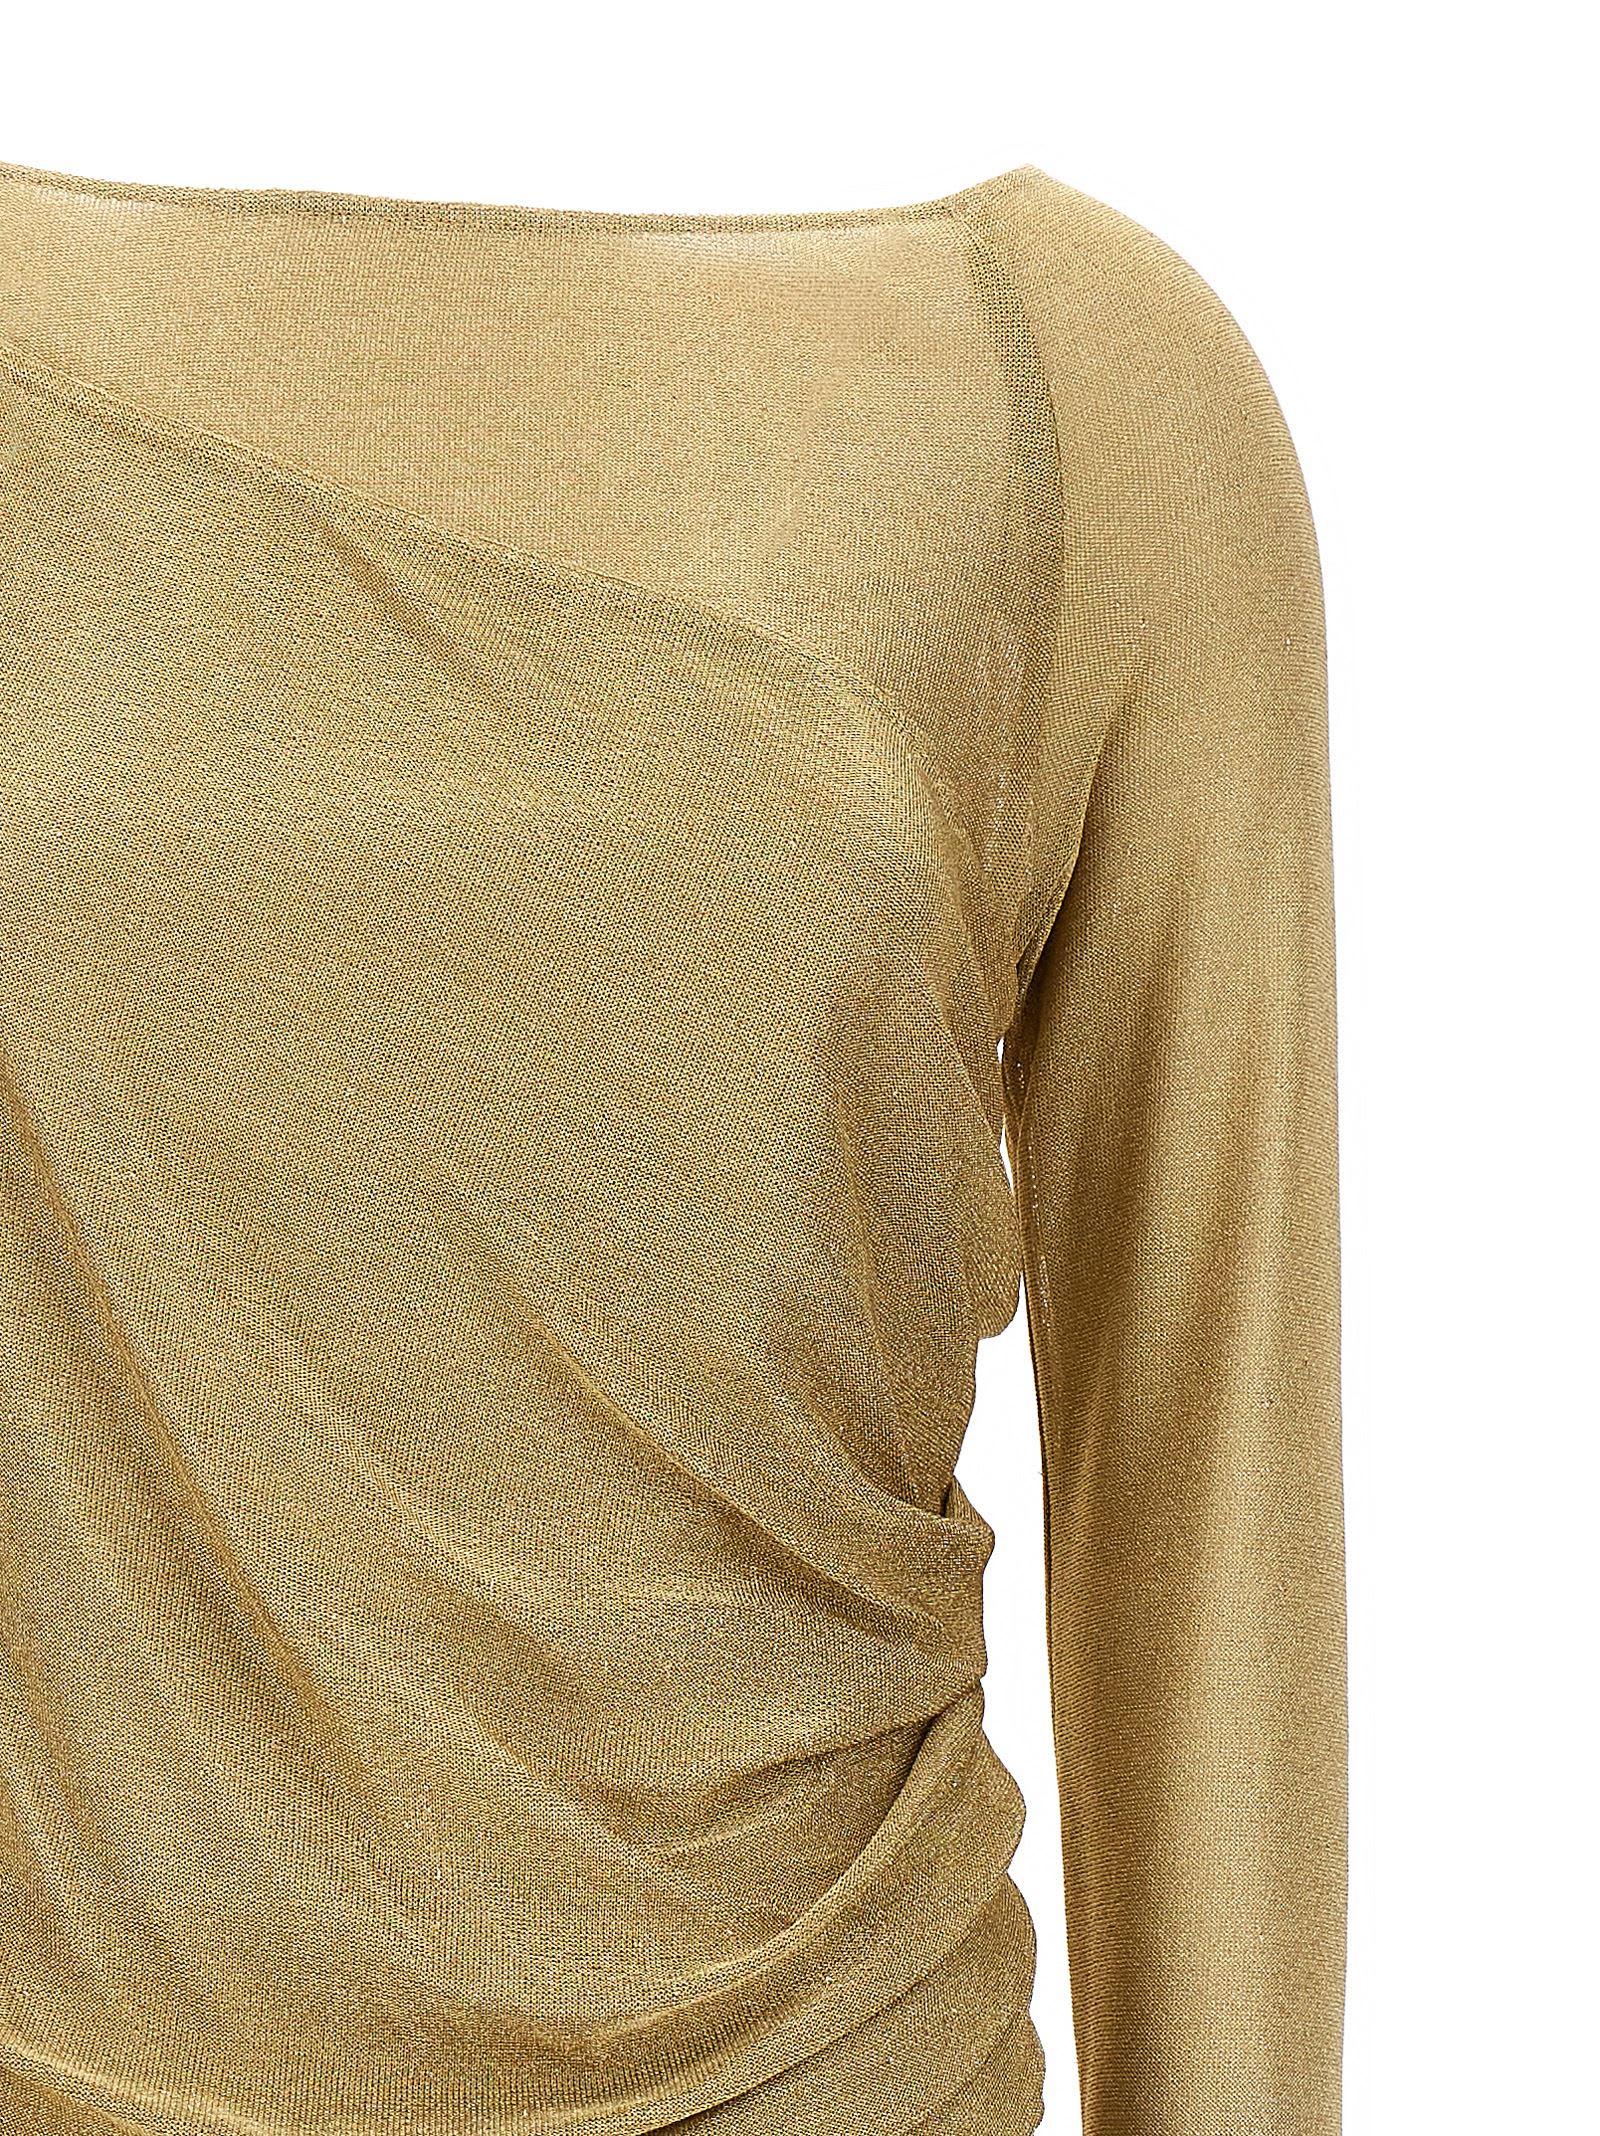 Long-sleeve Monogram Motif Silk Cady Dress in Camel - Women